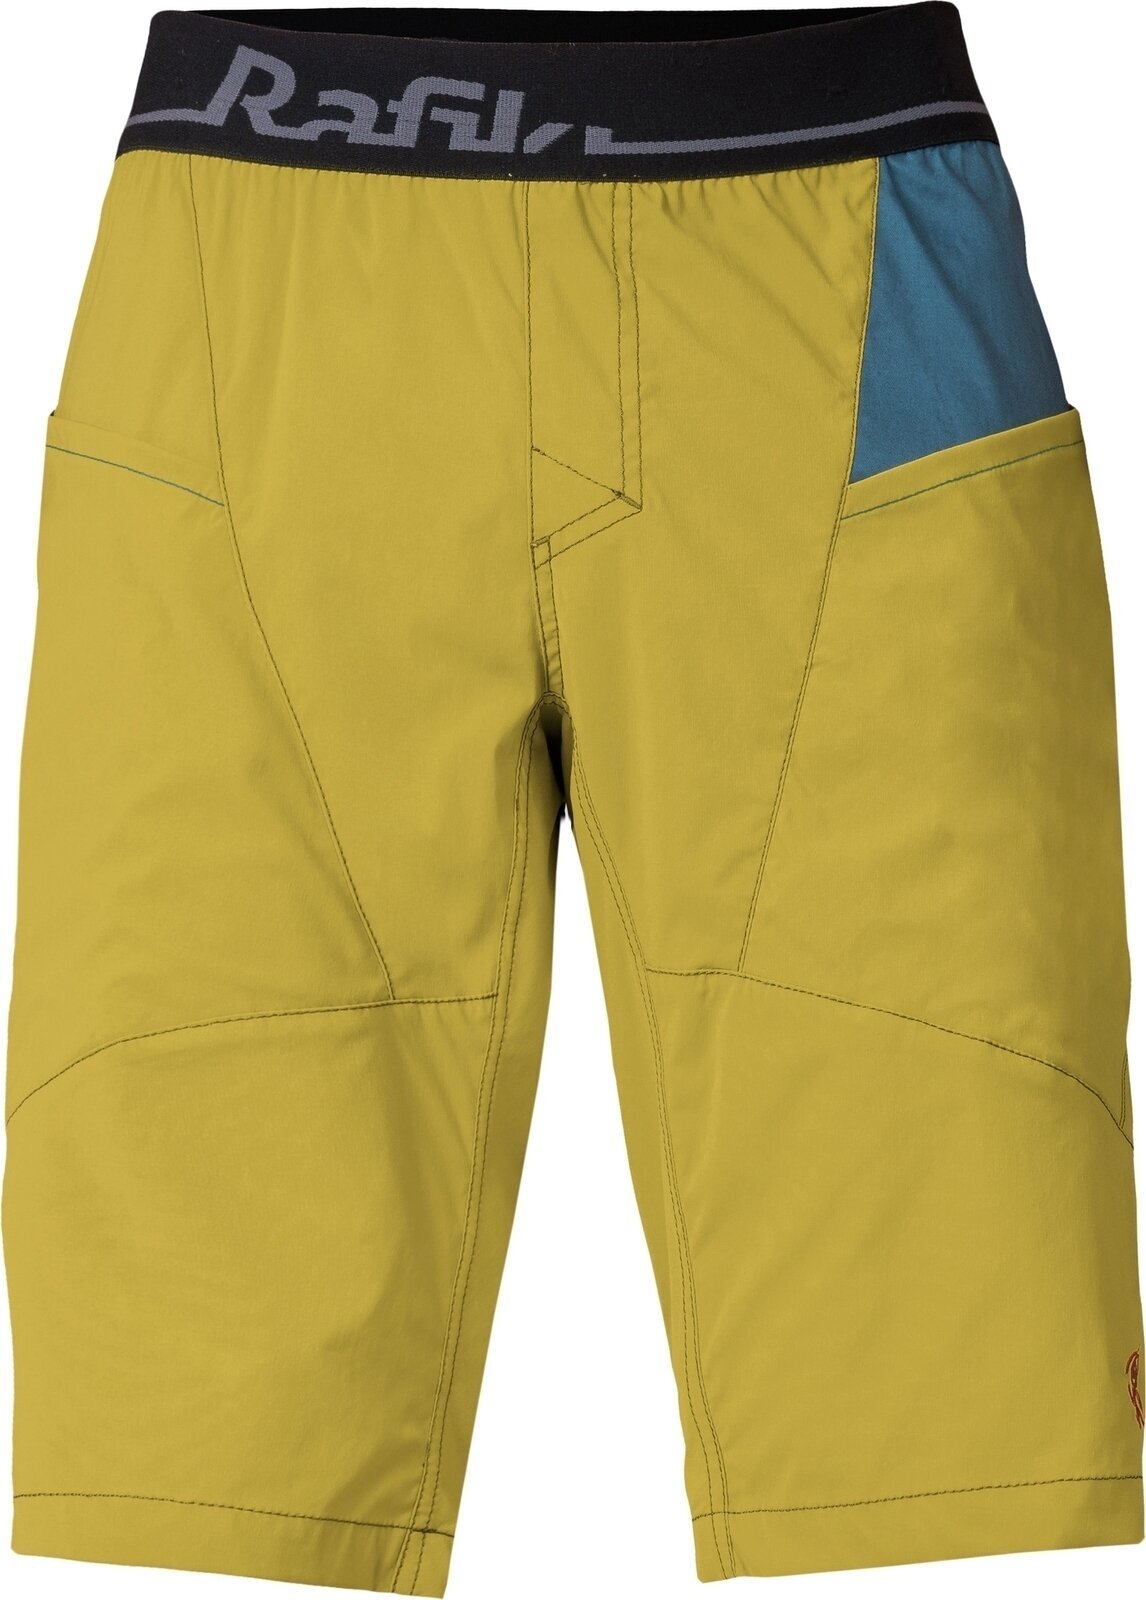 Outdoorové šortky Rafiki Megos Man Shorts Cress Green/Stargazer L Outdoorové šortky